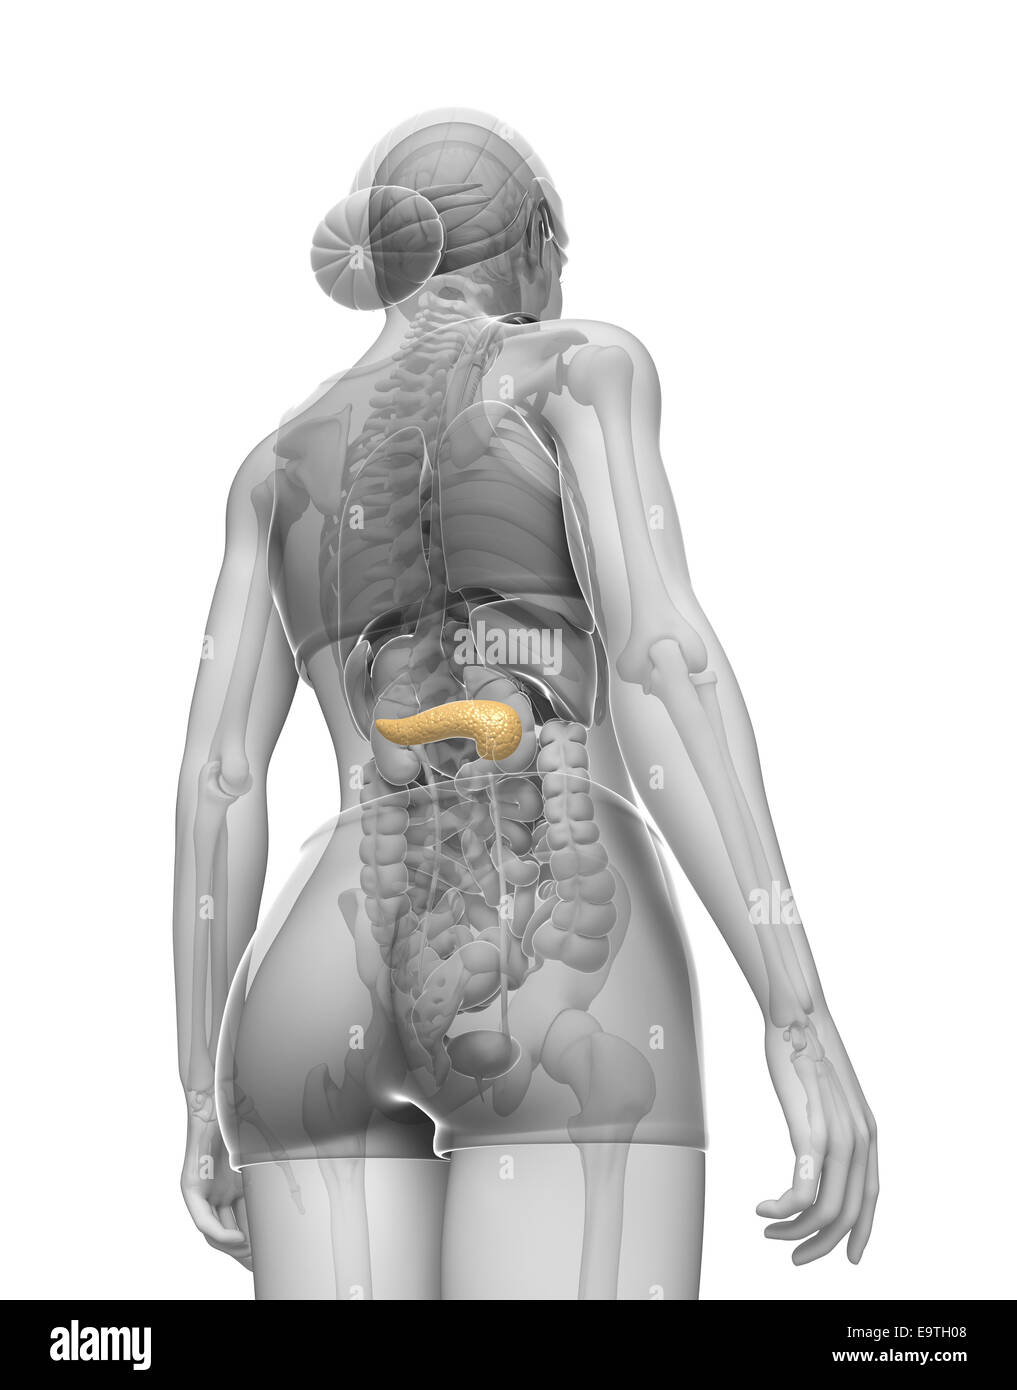 Illustrazione della femmina anatomia del pancreas Foto Stock